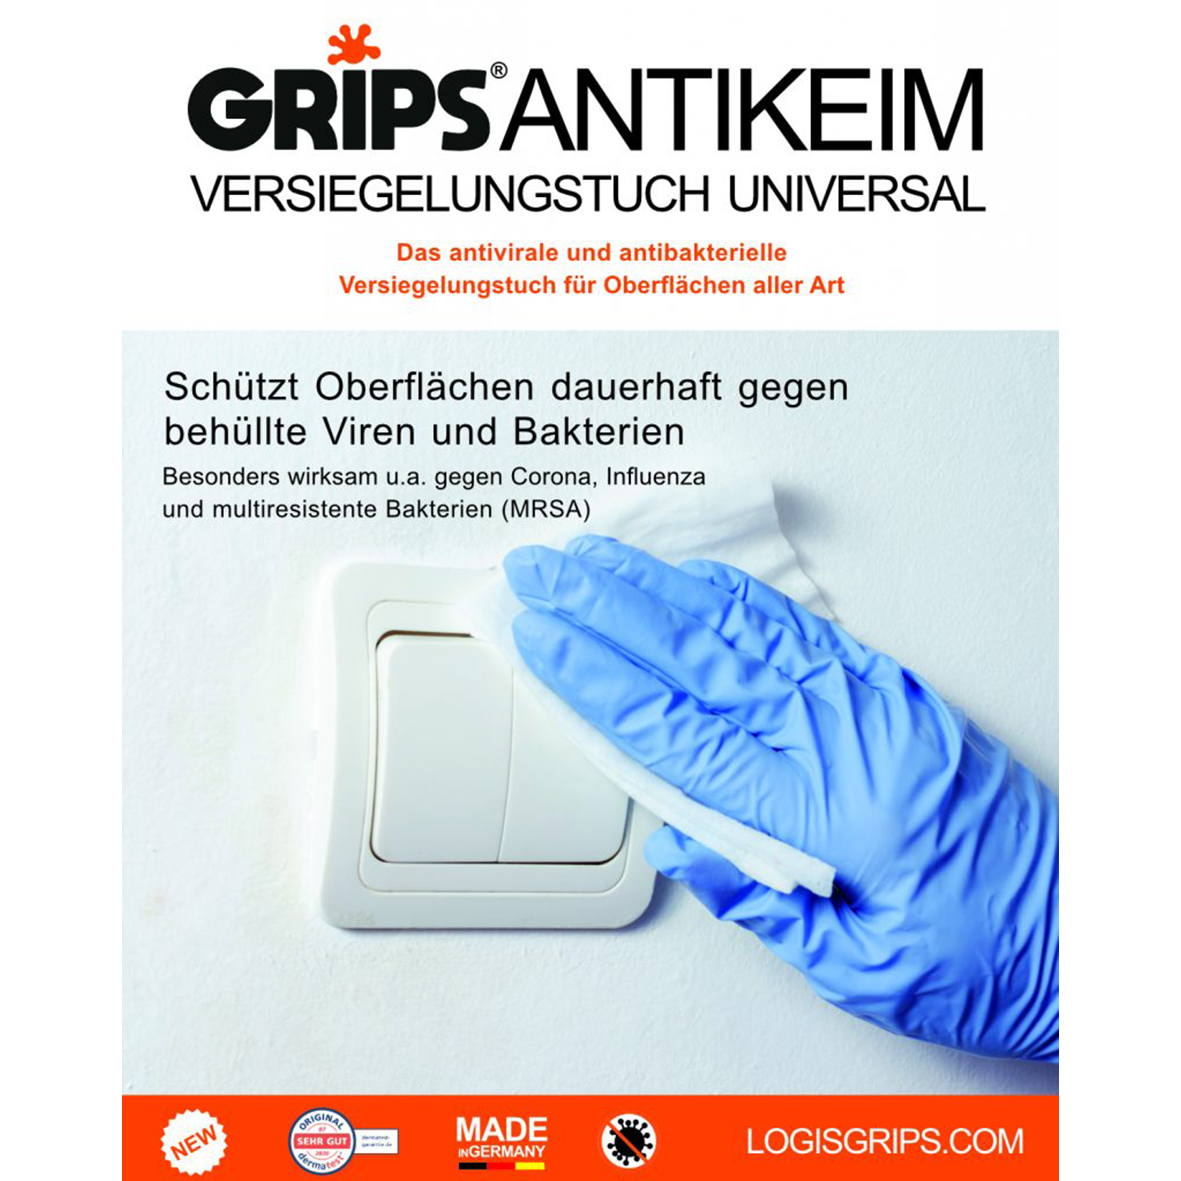 DE_LOGIS-GRIPS-Antikeimversiegelungstuch-Universal